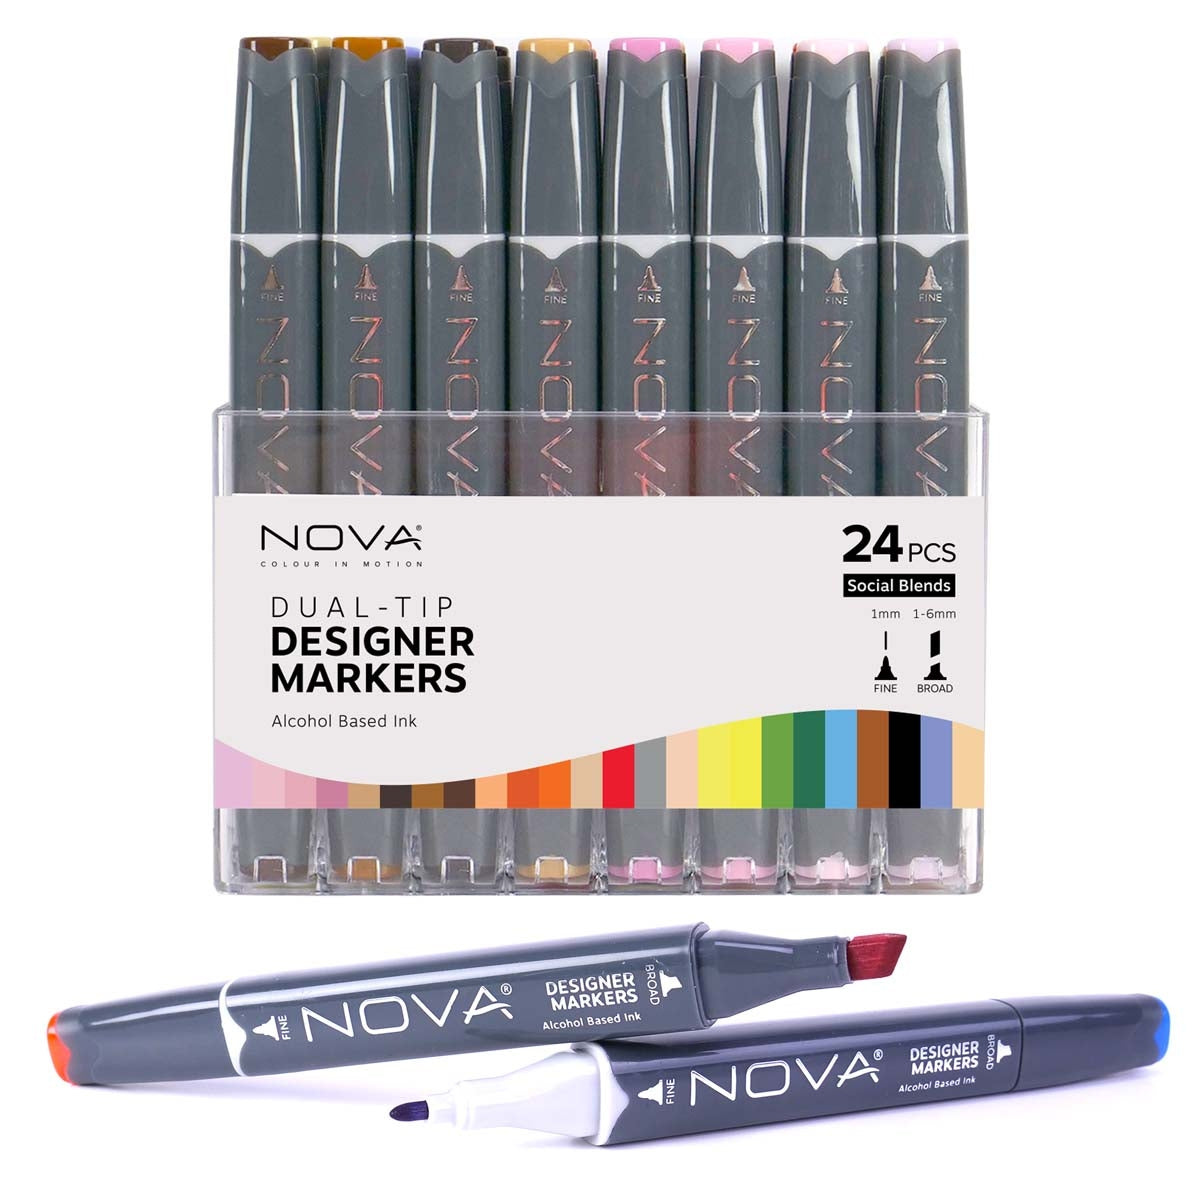 Nova - Designer Markers - Dual Tip - Alcohol Based - 24 Pack - Social Blends